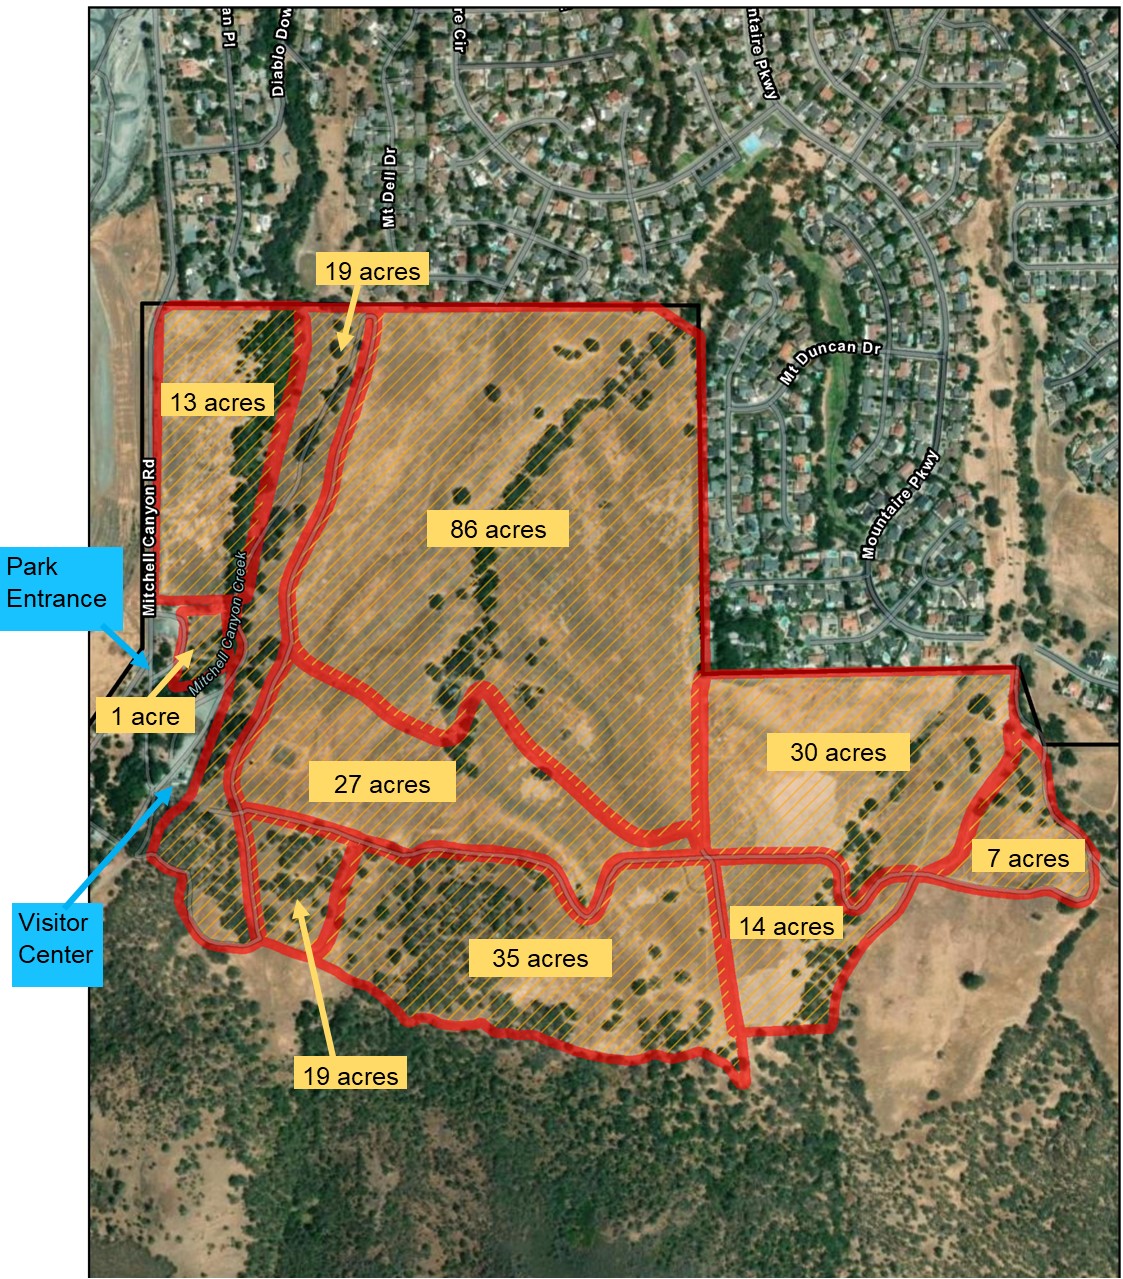  Burn plot map with acreage: 1, 27, 19, 35, 14, 30, 7, 86, 19, 13